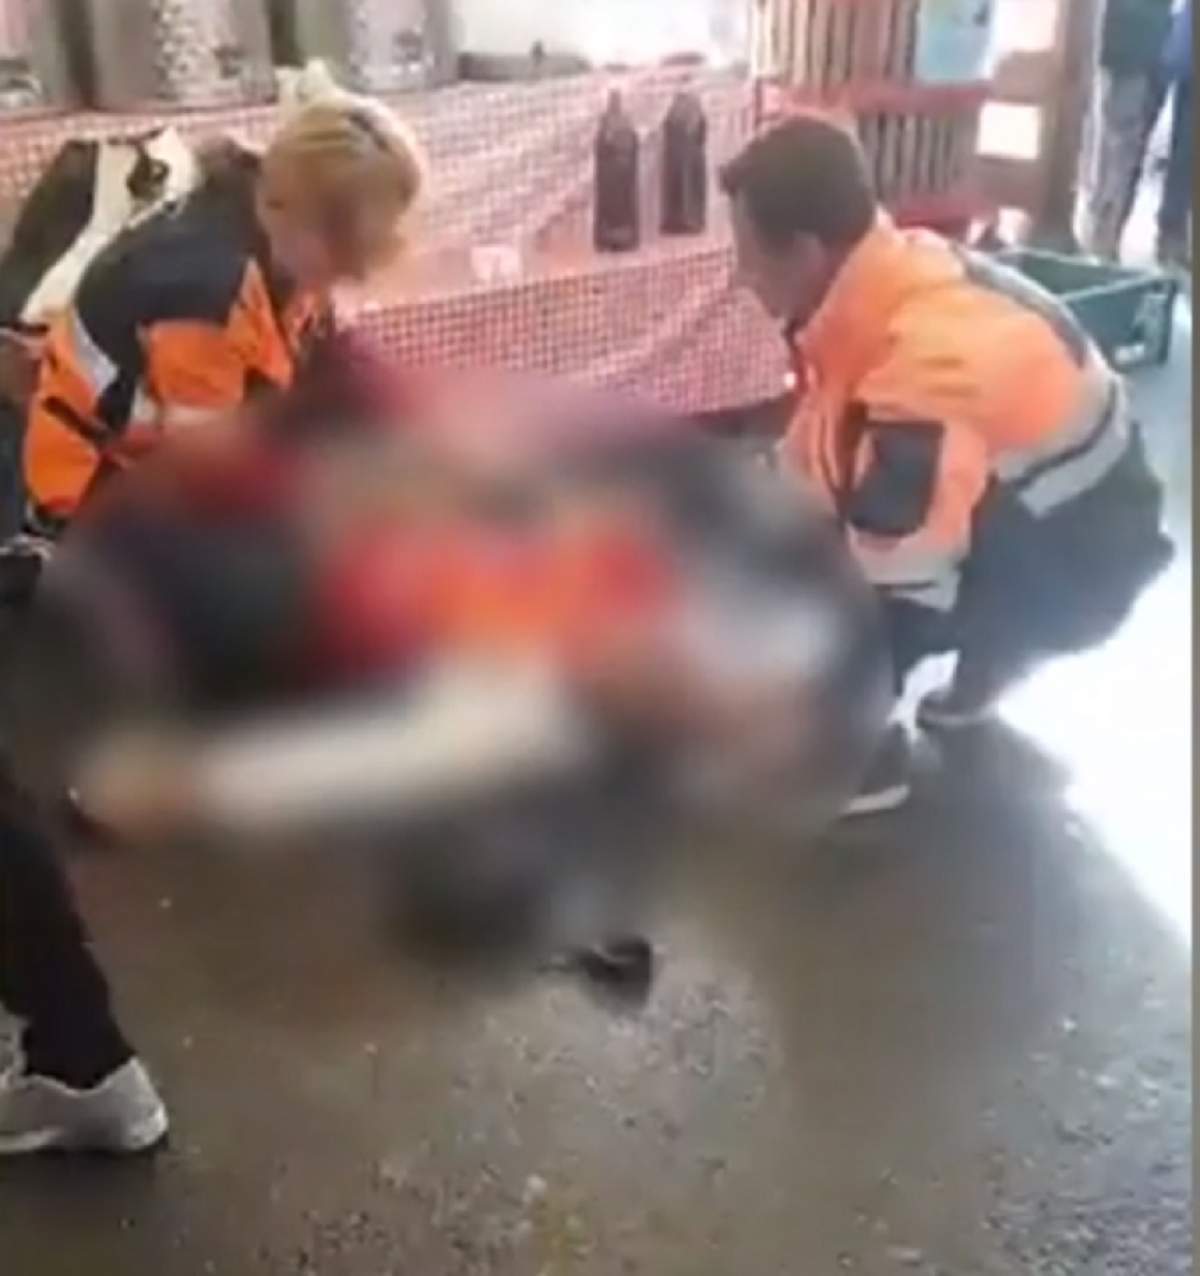 VIDEO / Bucureştean mort în stradă. Medicii sunt acuzaţi că nu au ştiut să-i acorde ajutor